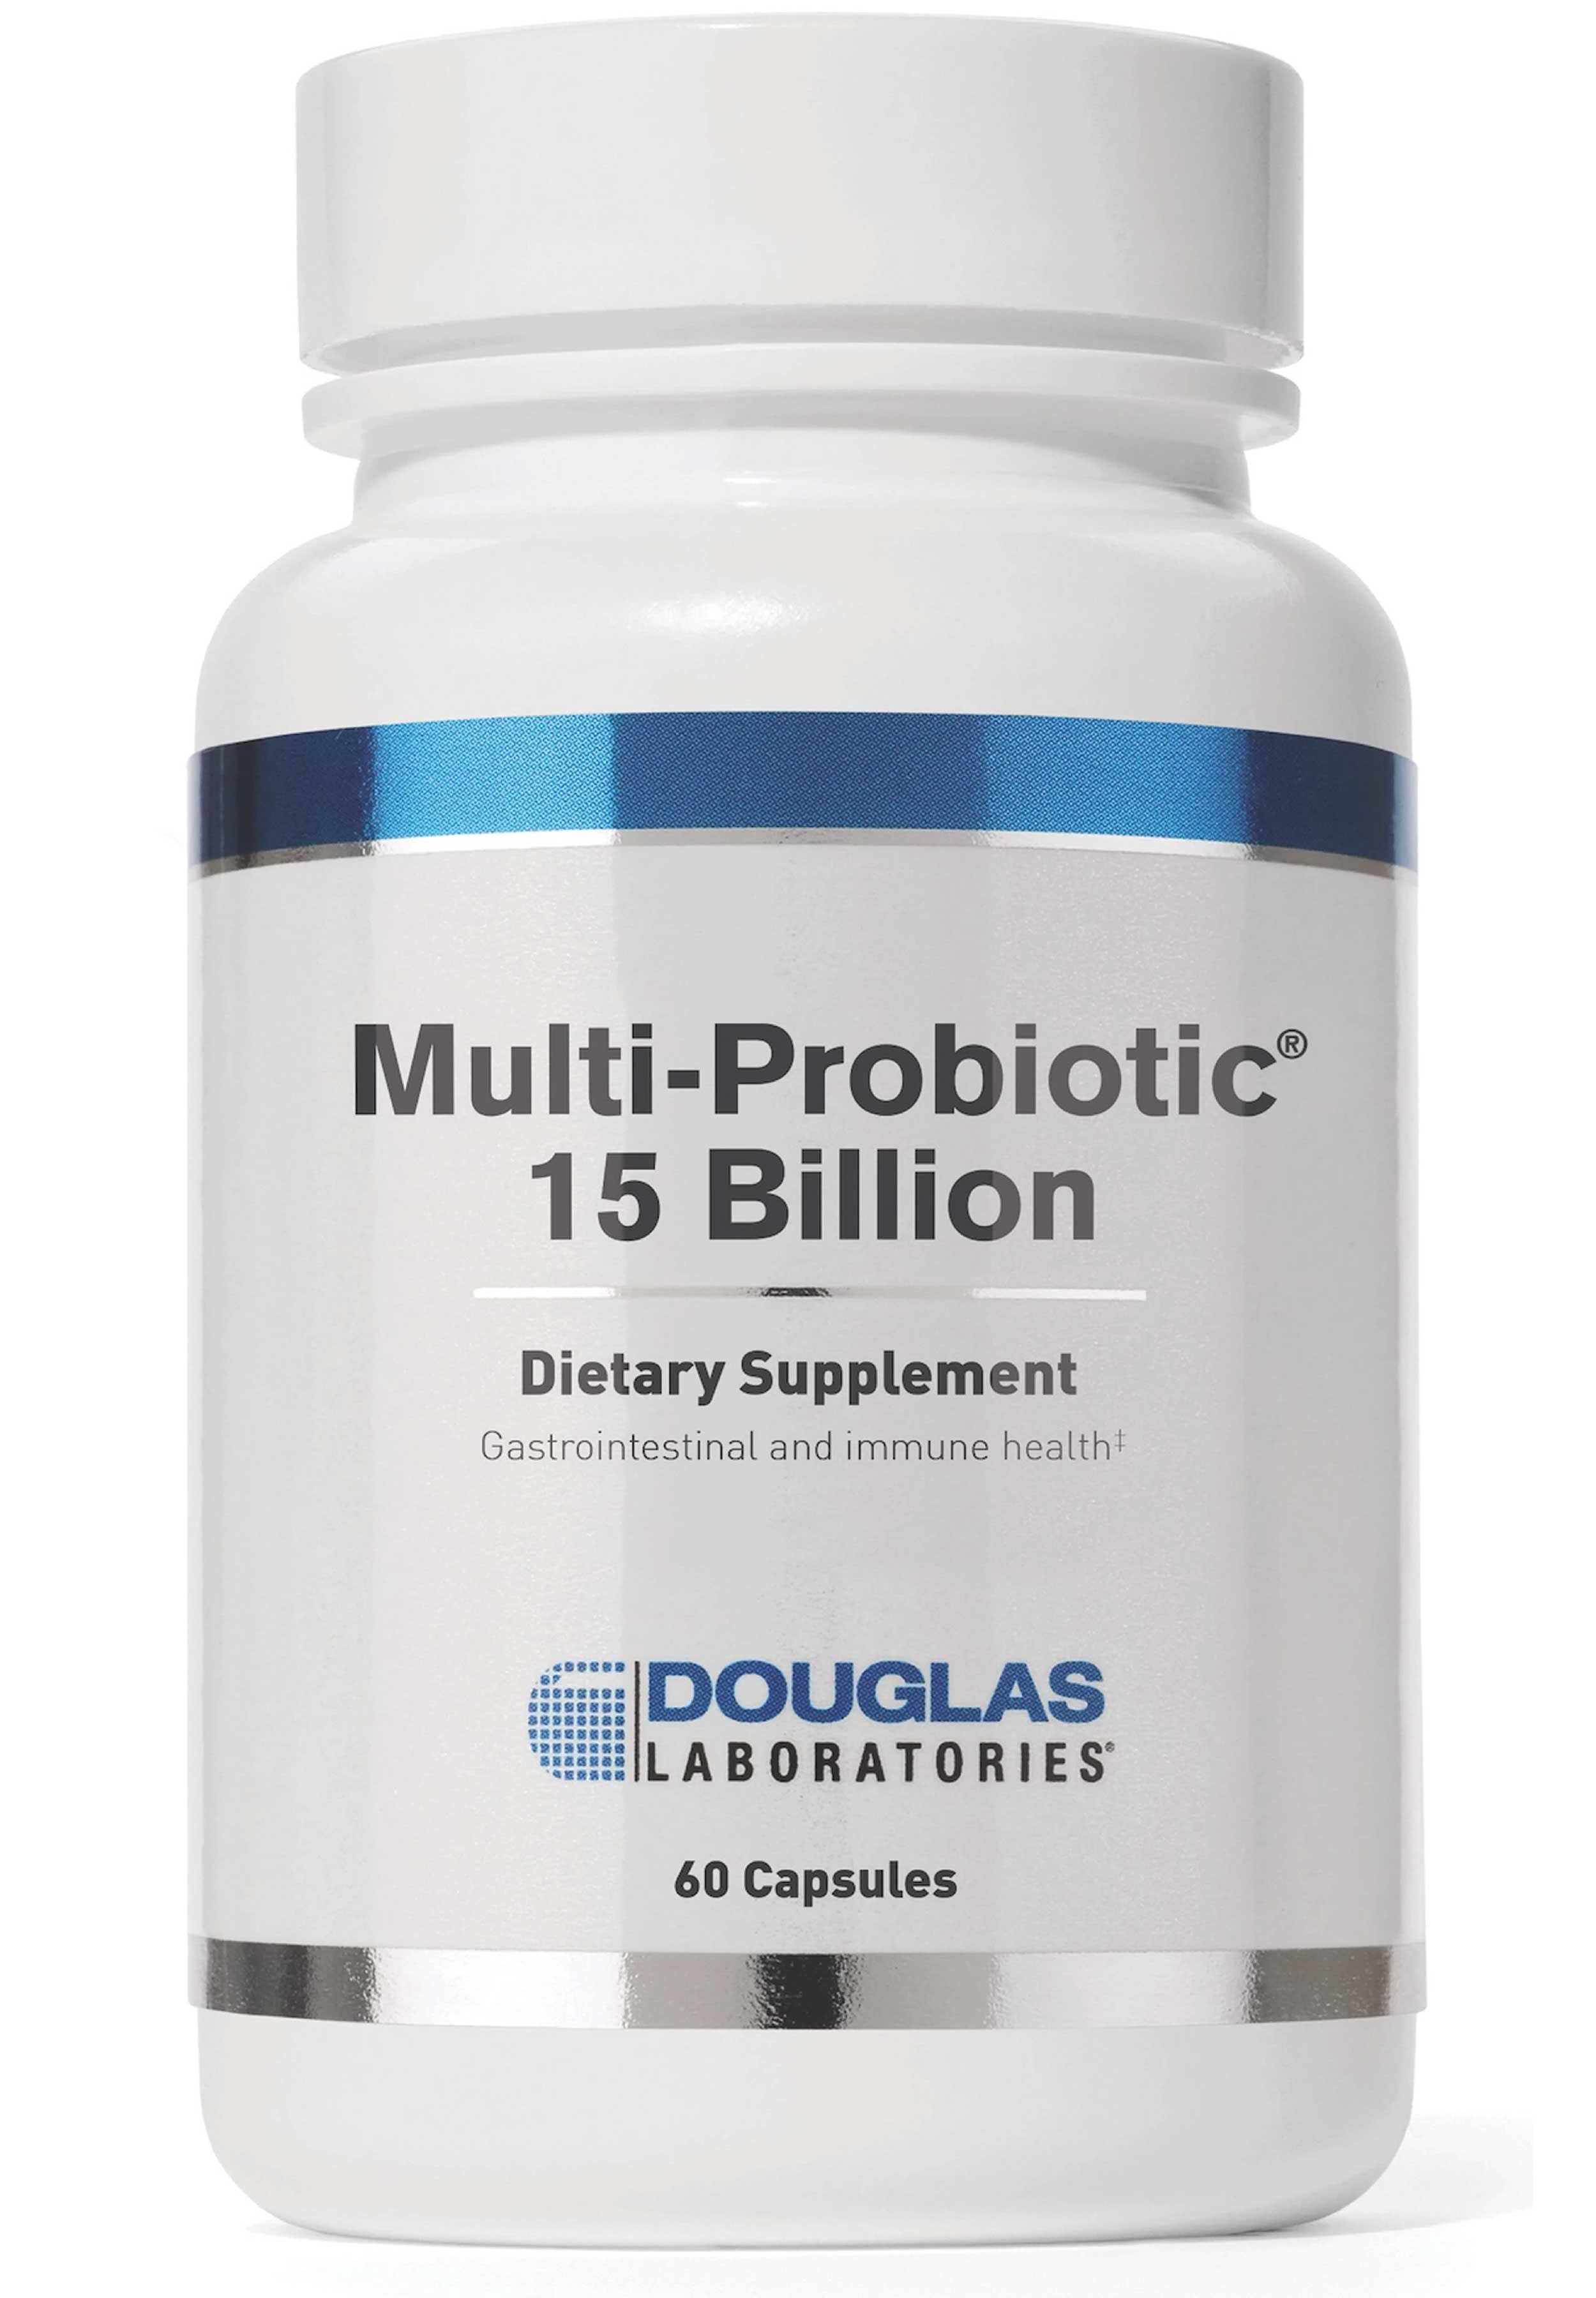 Douglas Laboratories - Multi-Probiotic 15 Billion - 60 Capsules